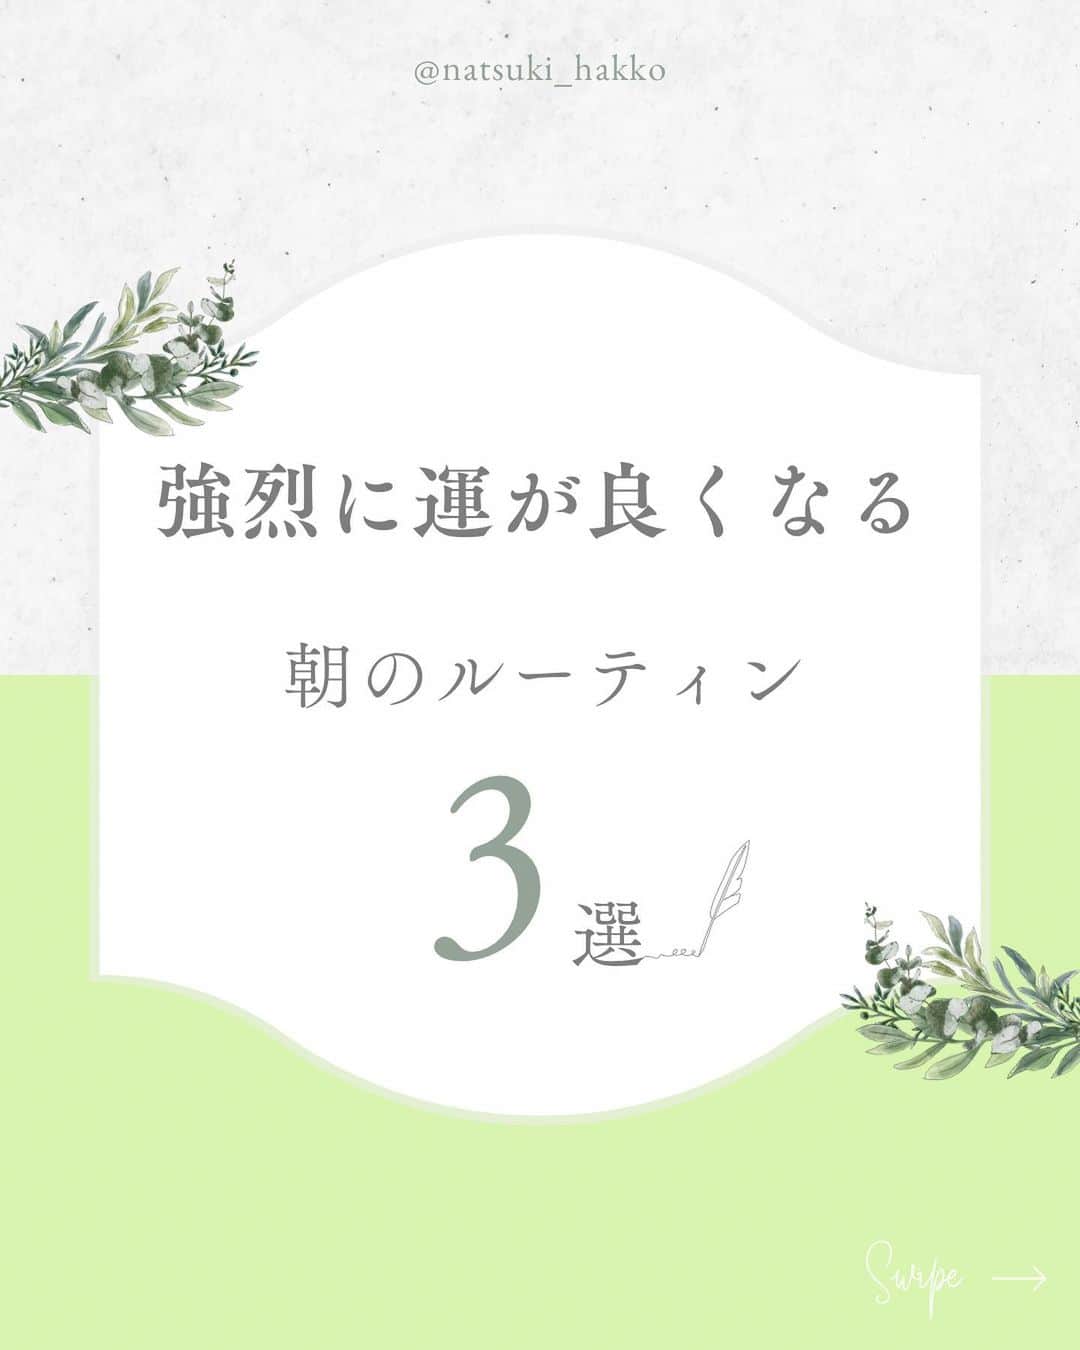 田中菜月のインスタグラム：「. @natsuki_hakko  発酵食をつくるだけでは うまくいかなかった。  なぜなら 発酵するあり方じゃ なかったから。  徹底的に 21日間、朝のルーティンをしました。  腸内環境を改善するために ヨーグルトを 21日間続けてみてという宣伝も あるくらい  菌も人も 21日間は変容の数字。  すると、ほんとに、びっくりなことが。  そのとき願った沖縄との2拠点生活が 奇跡的に叶ったり  パートナーも サロンメンバーさんも 次々と  新しいフェーズの働きが 始まっています。  取材とか講演のご依頼が 集まってきてる！  #モーニングルーティン  #パートナーシップ #フレンドシップ #お浄めそうじ #誓願 #アファメーション  女性限定で、お浄めそうじのことなど 発酵するあり方のお話会を 今週の金曜日 夜9:00〜開催します。  気になるかたは プロフィール欄の公式LINEに 【セルフラブ】とメッセージを お送りください。  ーーーーーーーーーーーーーーーー 7月スタート！ オンラインサロンメンバー募集中  FLORA85は 発酵する在り方＝Well being   その心地よさを一人ひとりが 生きはじめるオンラインサロンです。  詳細はプロフィール欄のリットリンクへ👉」